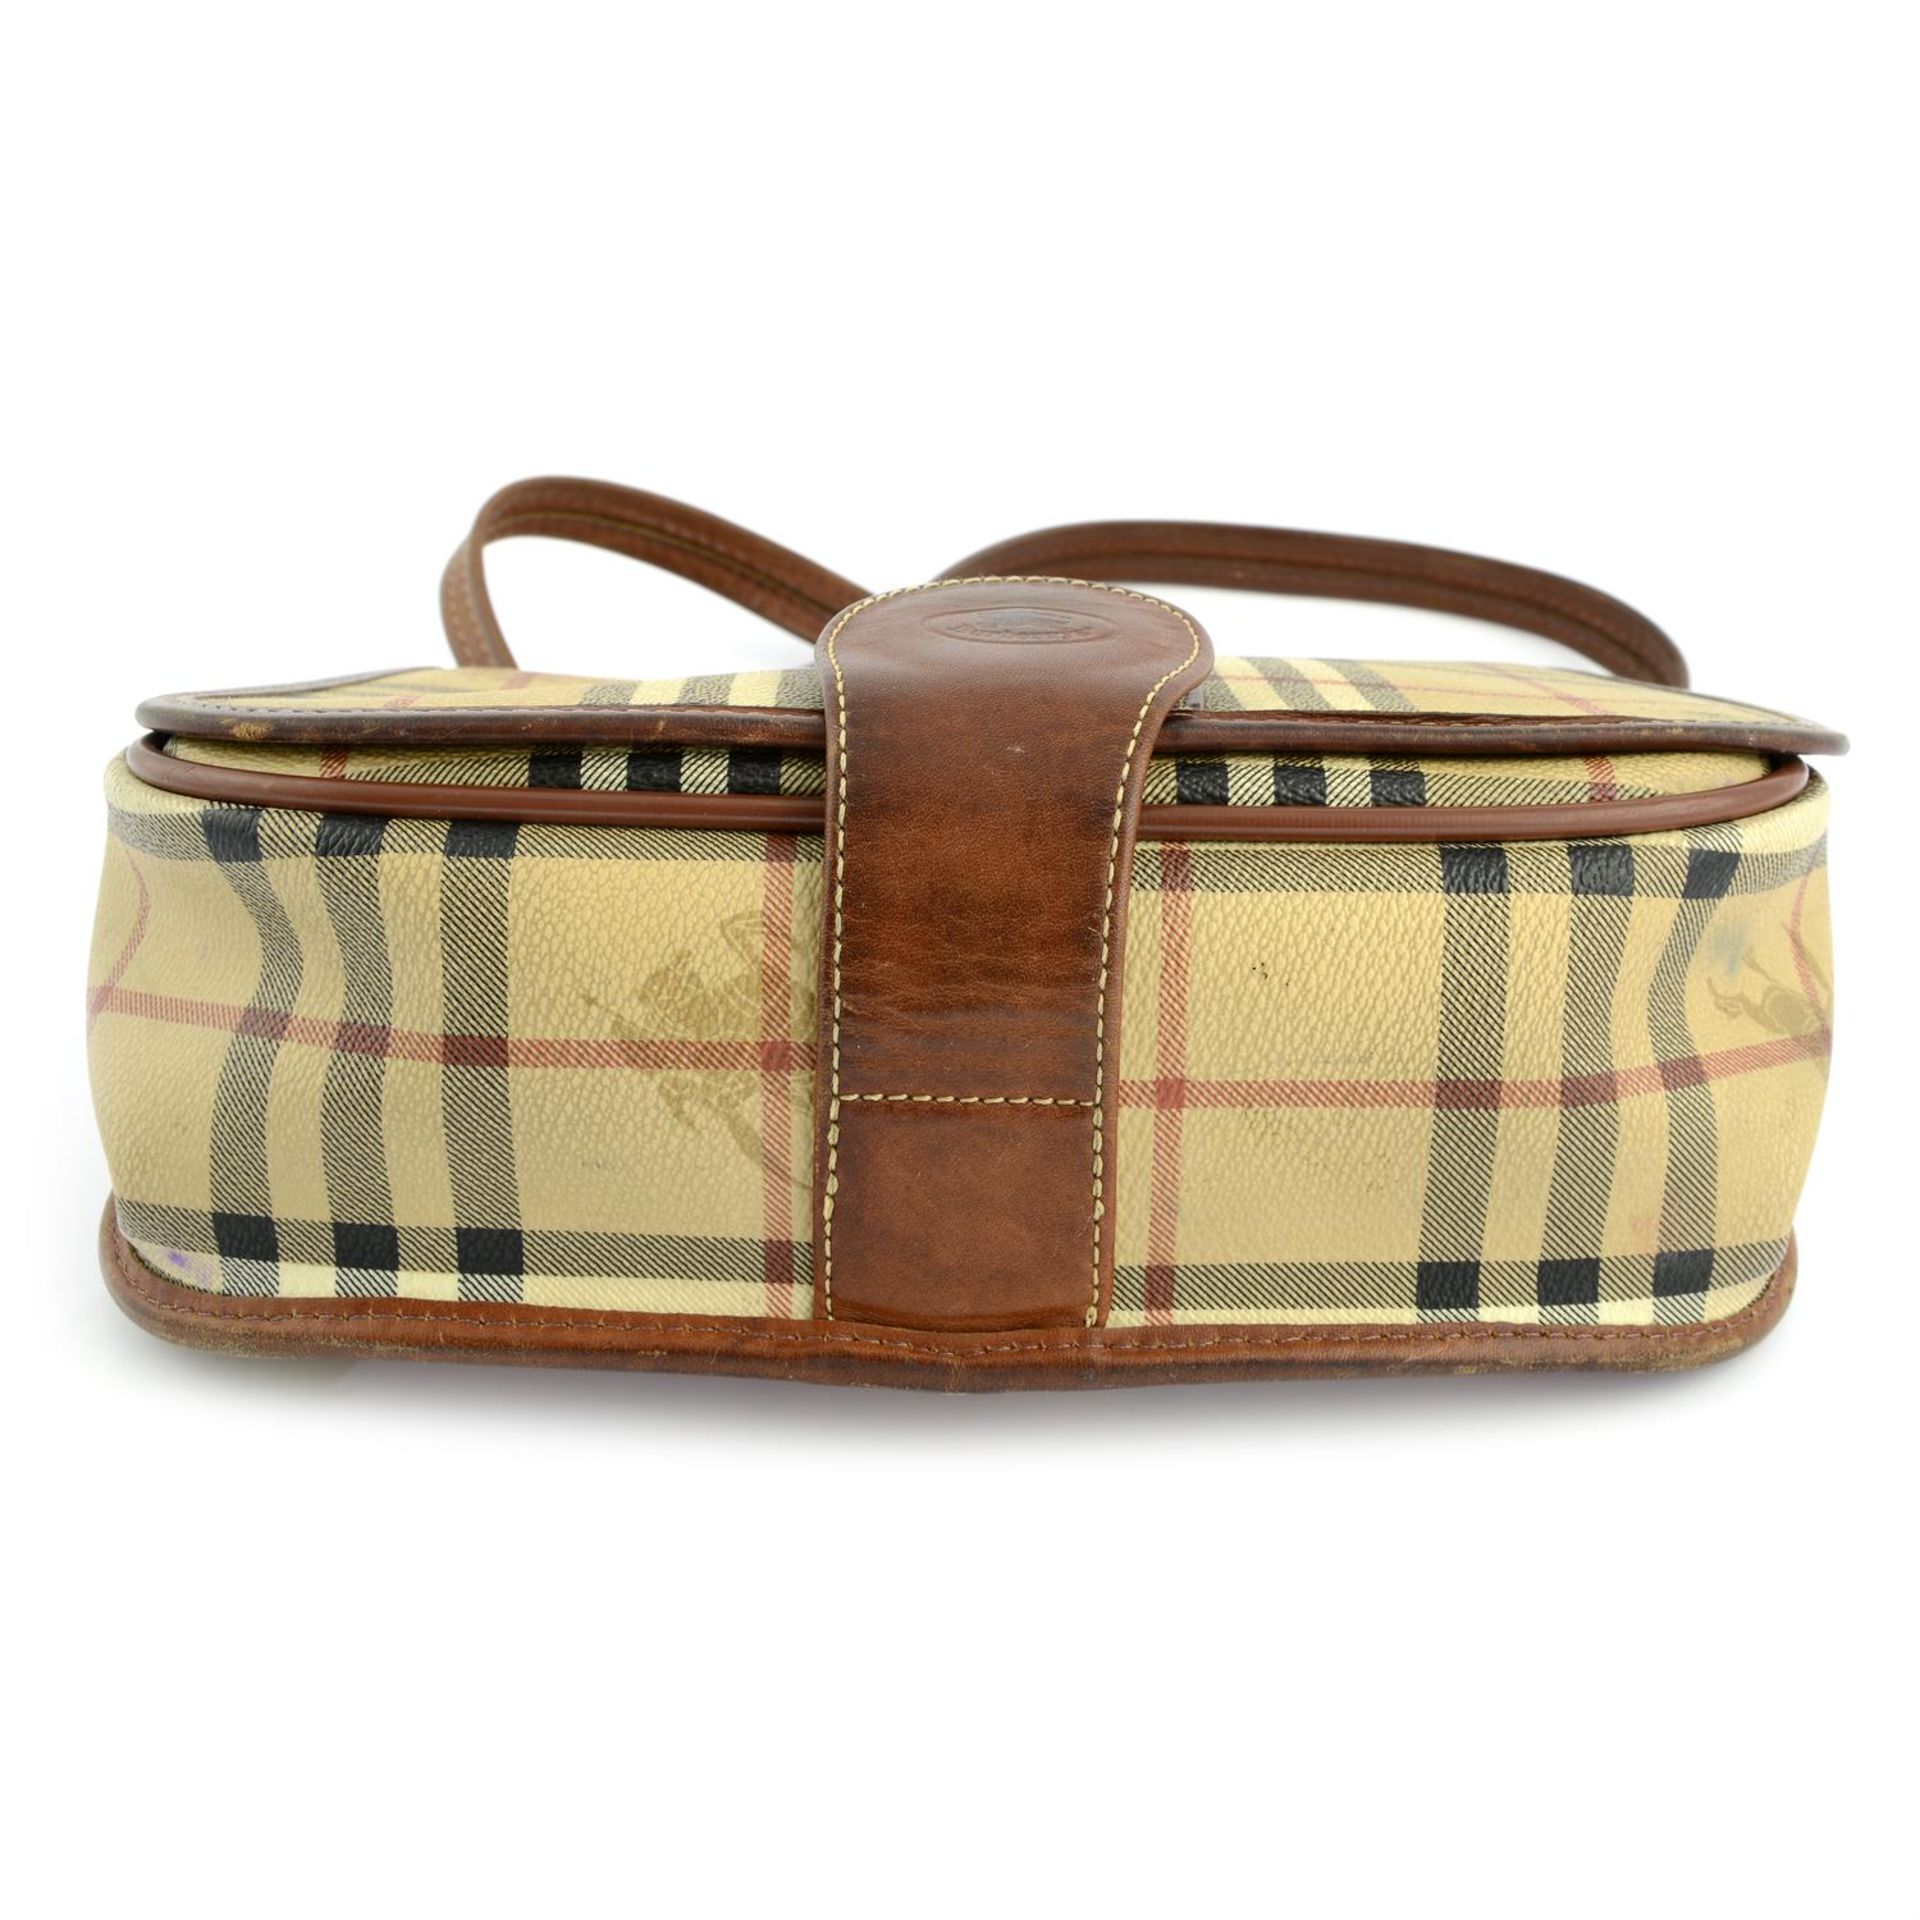 BURBERRY- a brown Haymarket canvas handbag. - Image 4 of 4